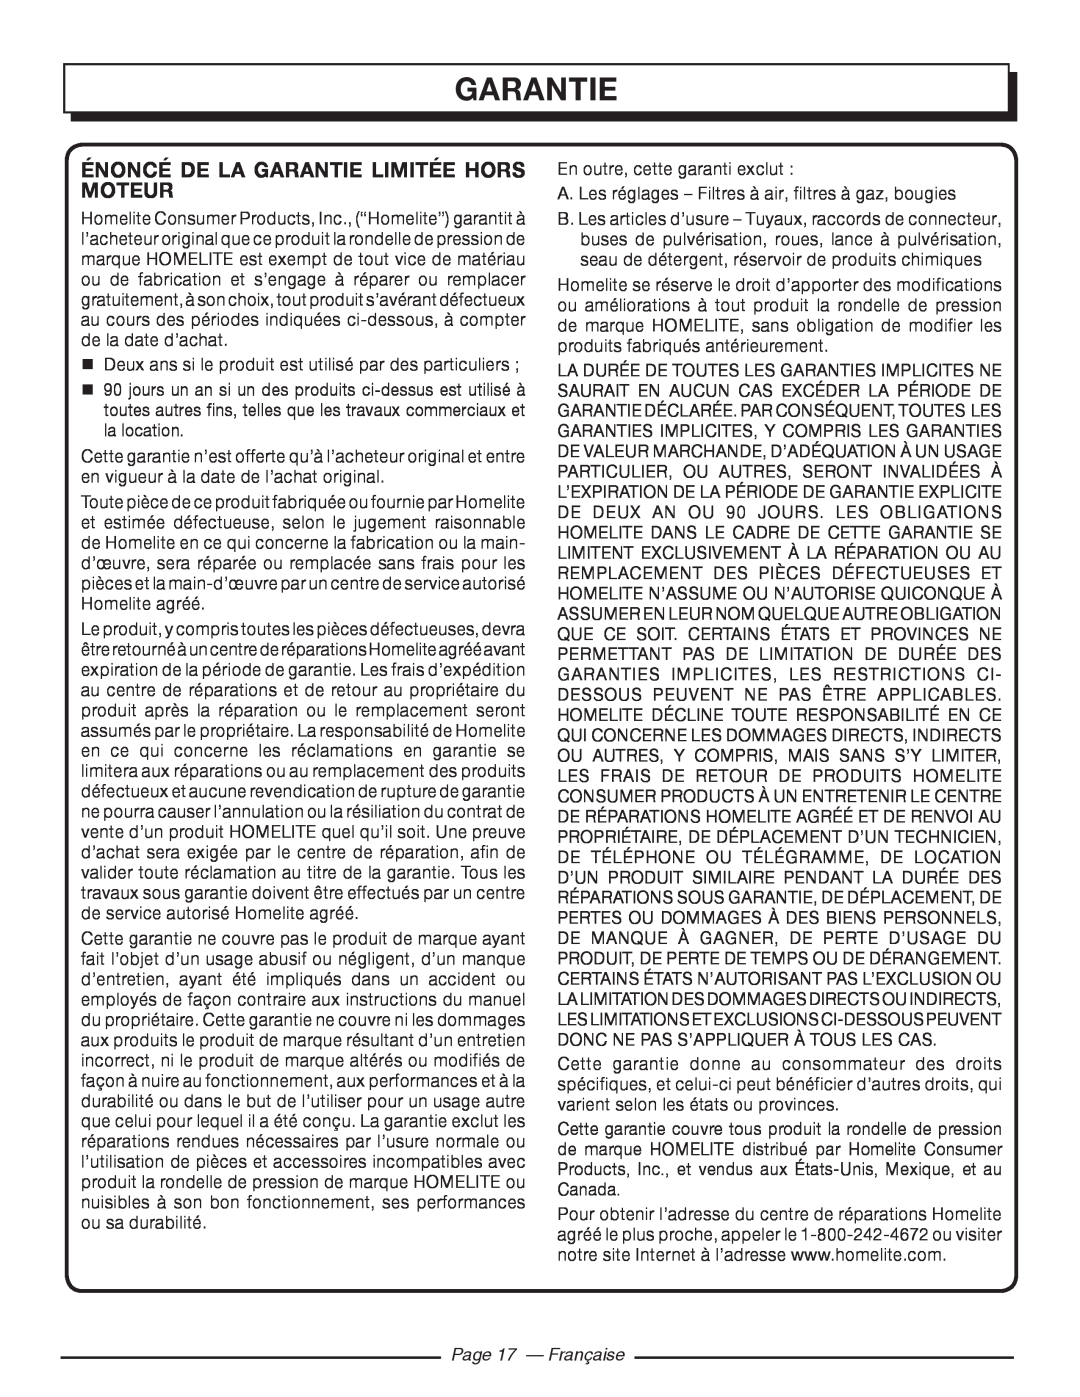 Homelite UT80516 manuel dutilisation Énoncé De La Garantie Limitée Hors Moteur, Page 17 - Française 